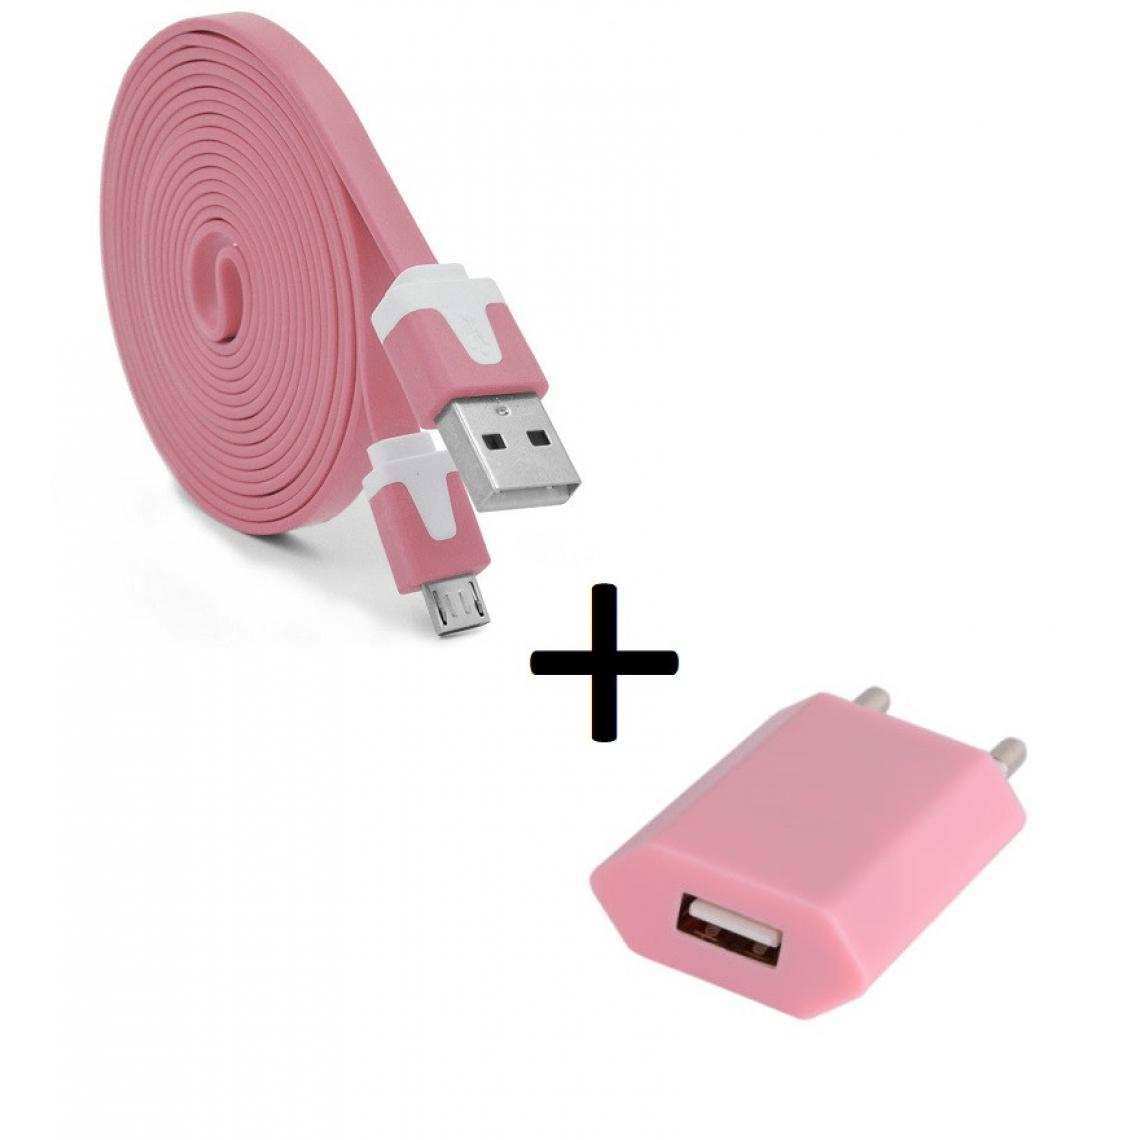 Shot - Pack Chargeur pour Enceinte Bose SoundLink Revolve+ Micro USB (Cable Noodle 3m + Prise Secteur Couleur USB) Android (ROSE) - Chargeur secteur téléphone